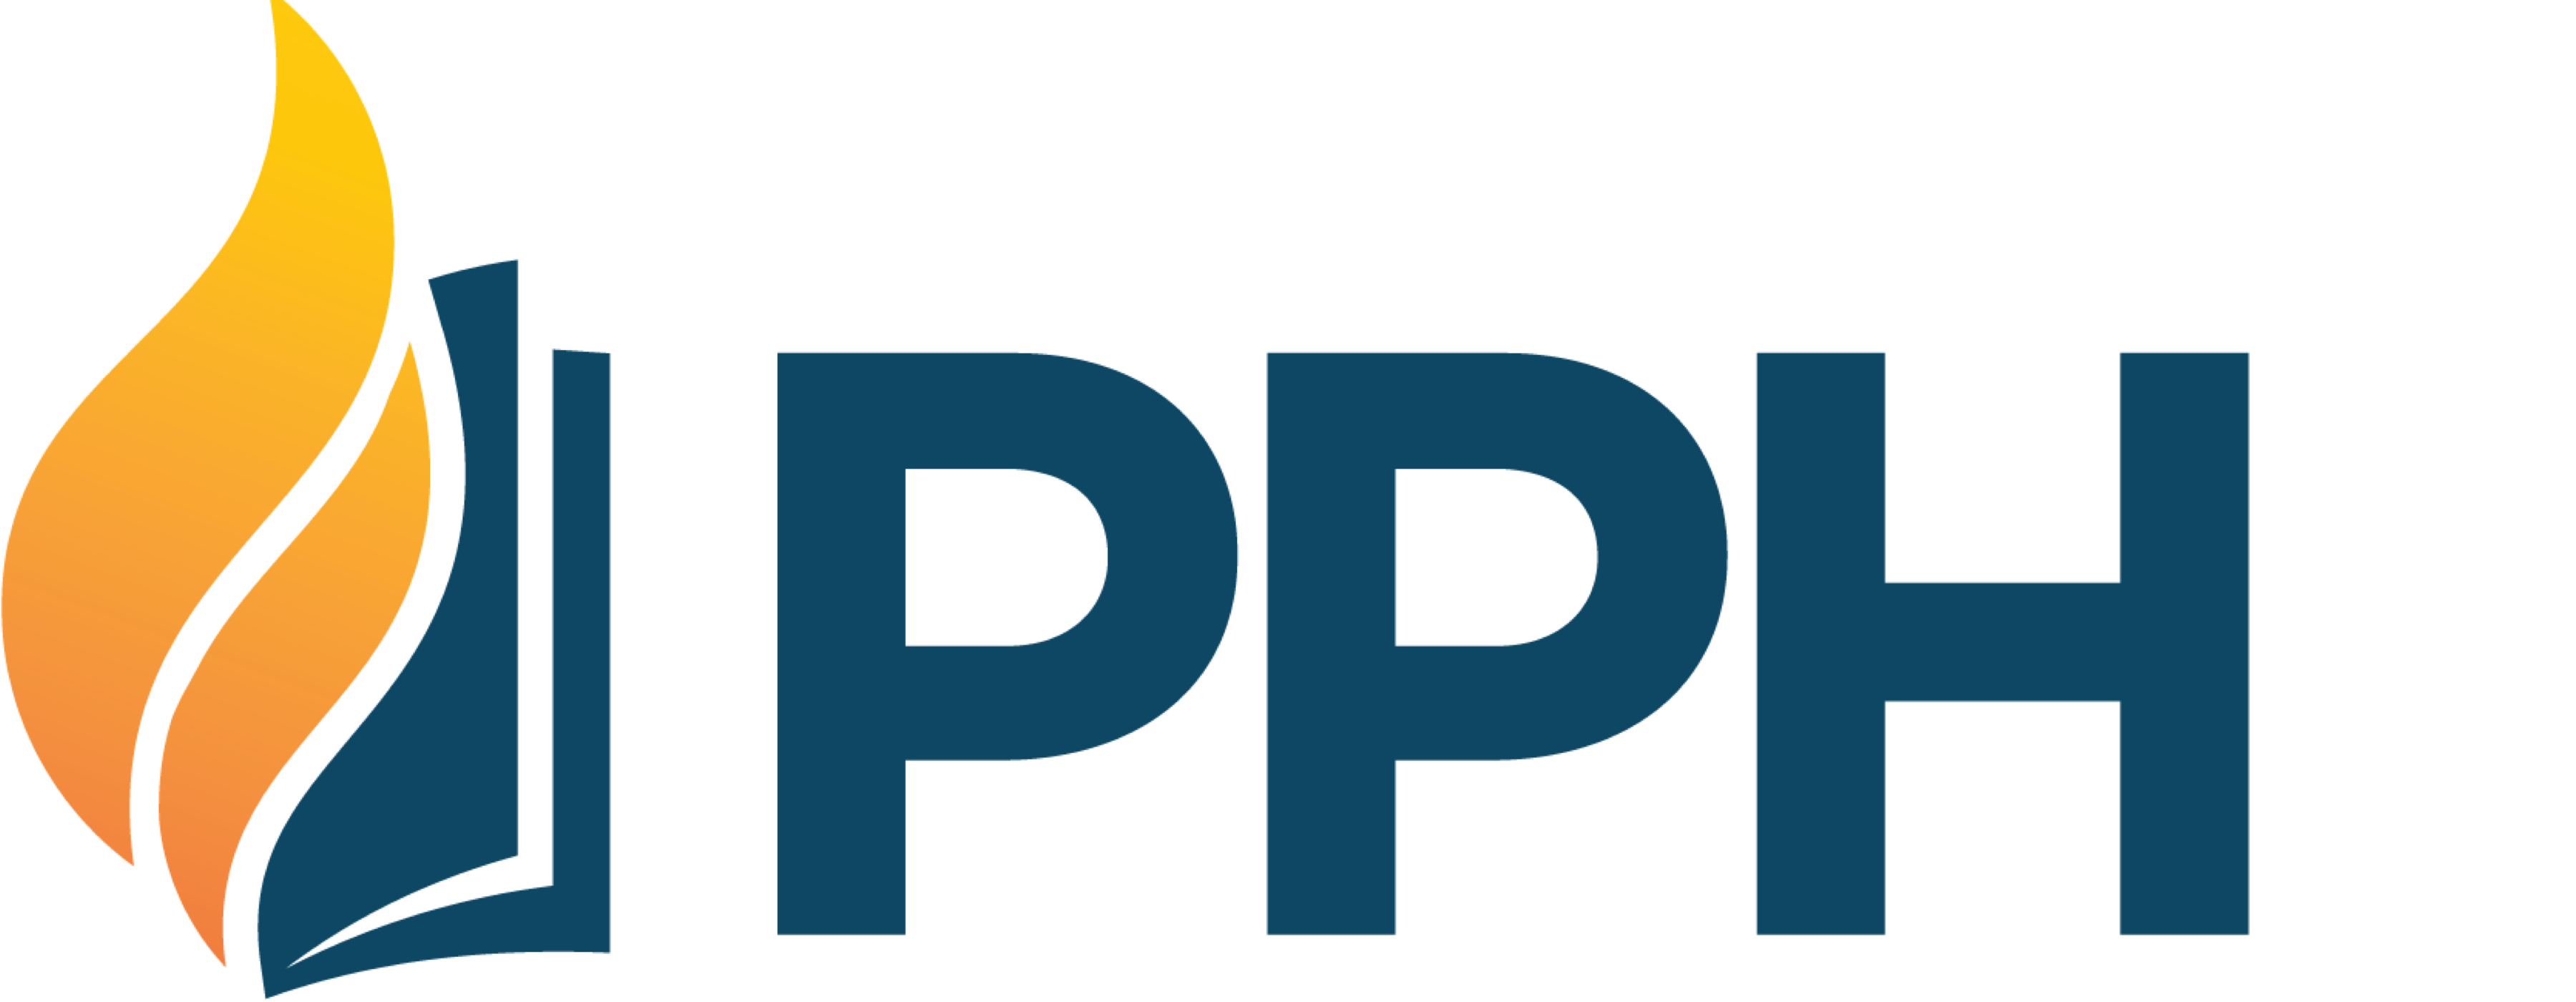 Pentecostal Publishing House logo